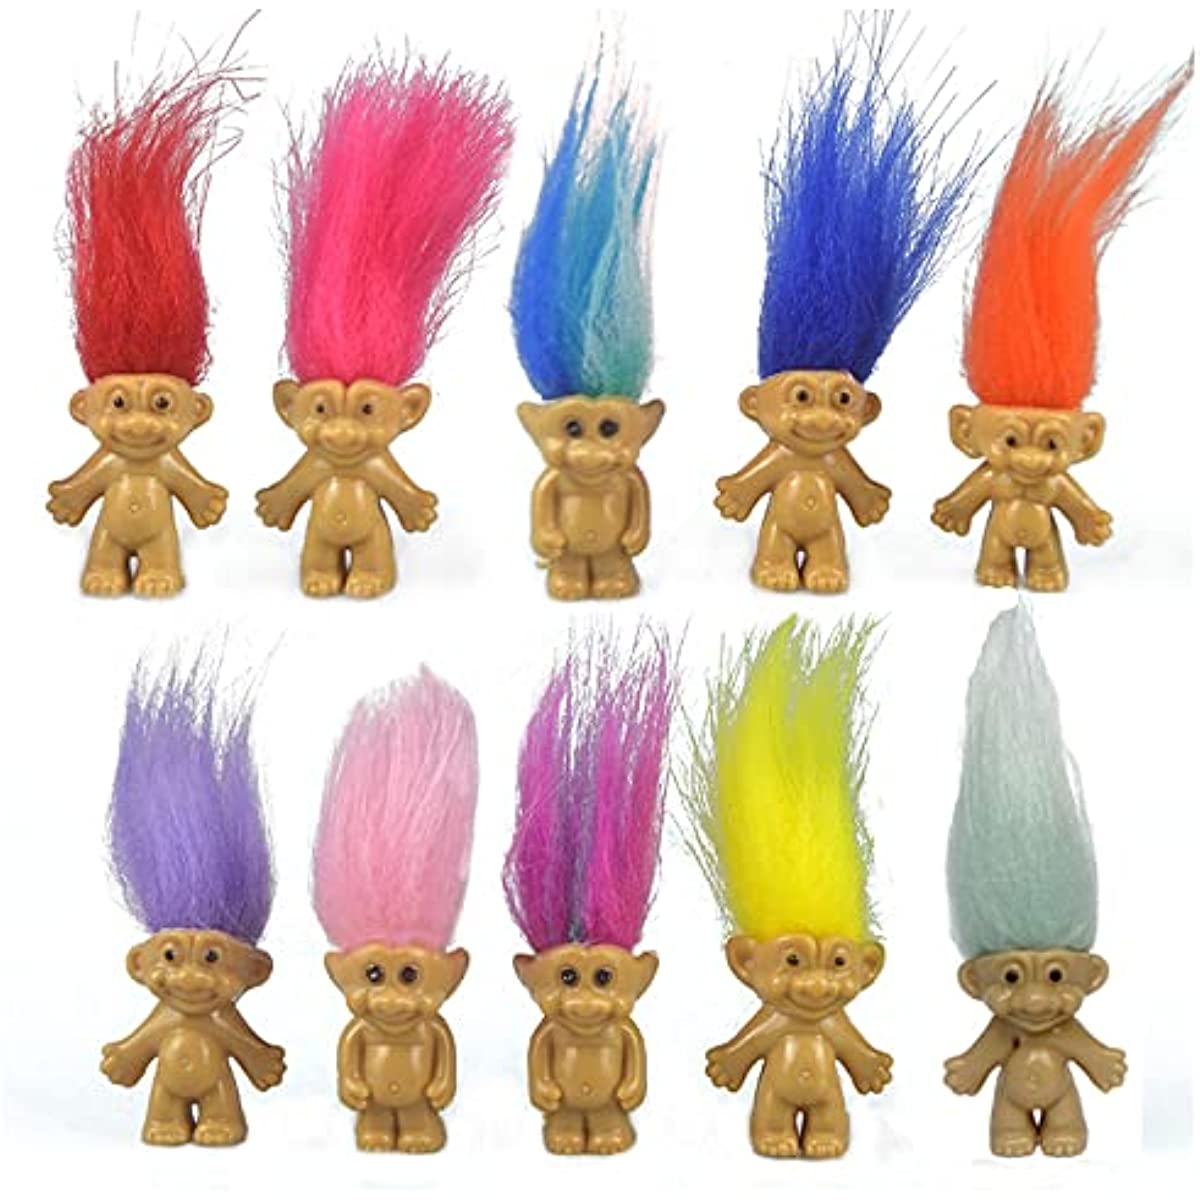 10 Stück Mini-Troll-Puppen, Spielzeug, PVC, Vintage-Trolle, Glückspuppe, Actionfiguren, Kuchendeckel, chromatisch, bezaubernd, niedliche kleine Kerle, Sammlung, Kunsthandwerk, Partygeschenke